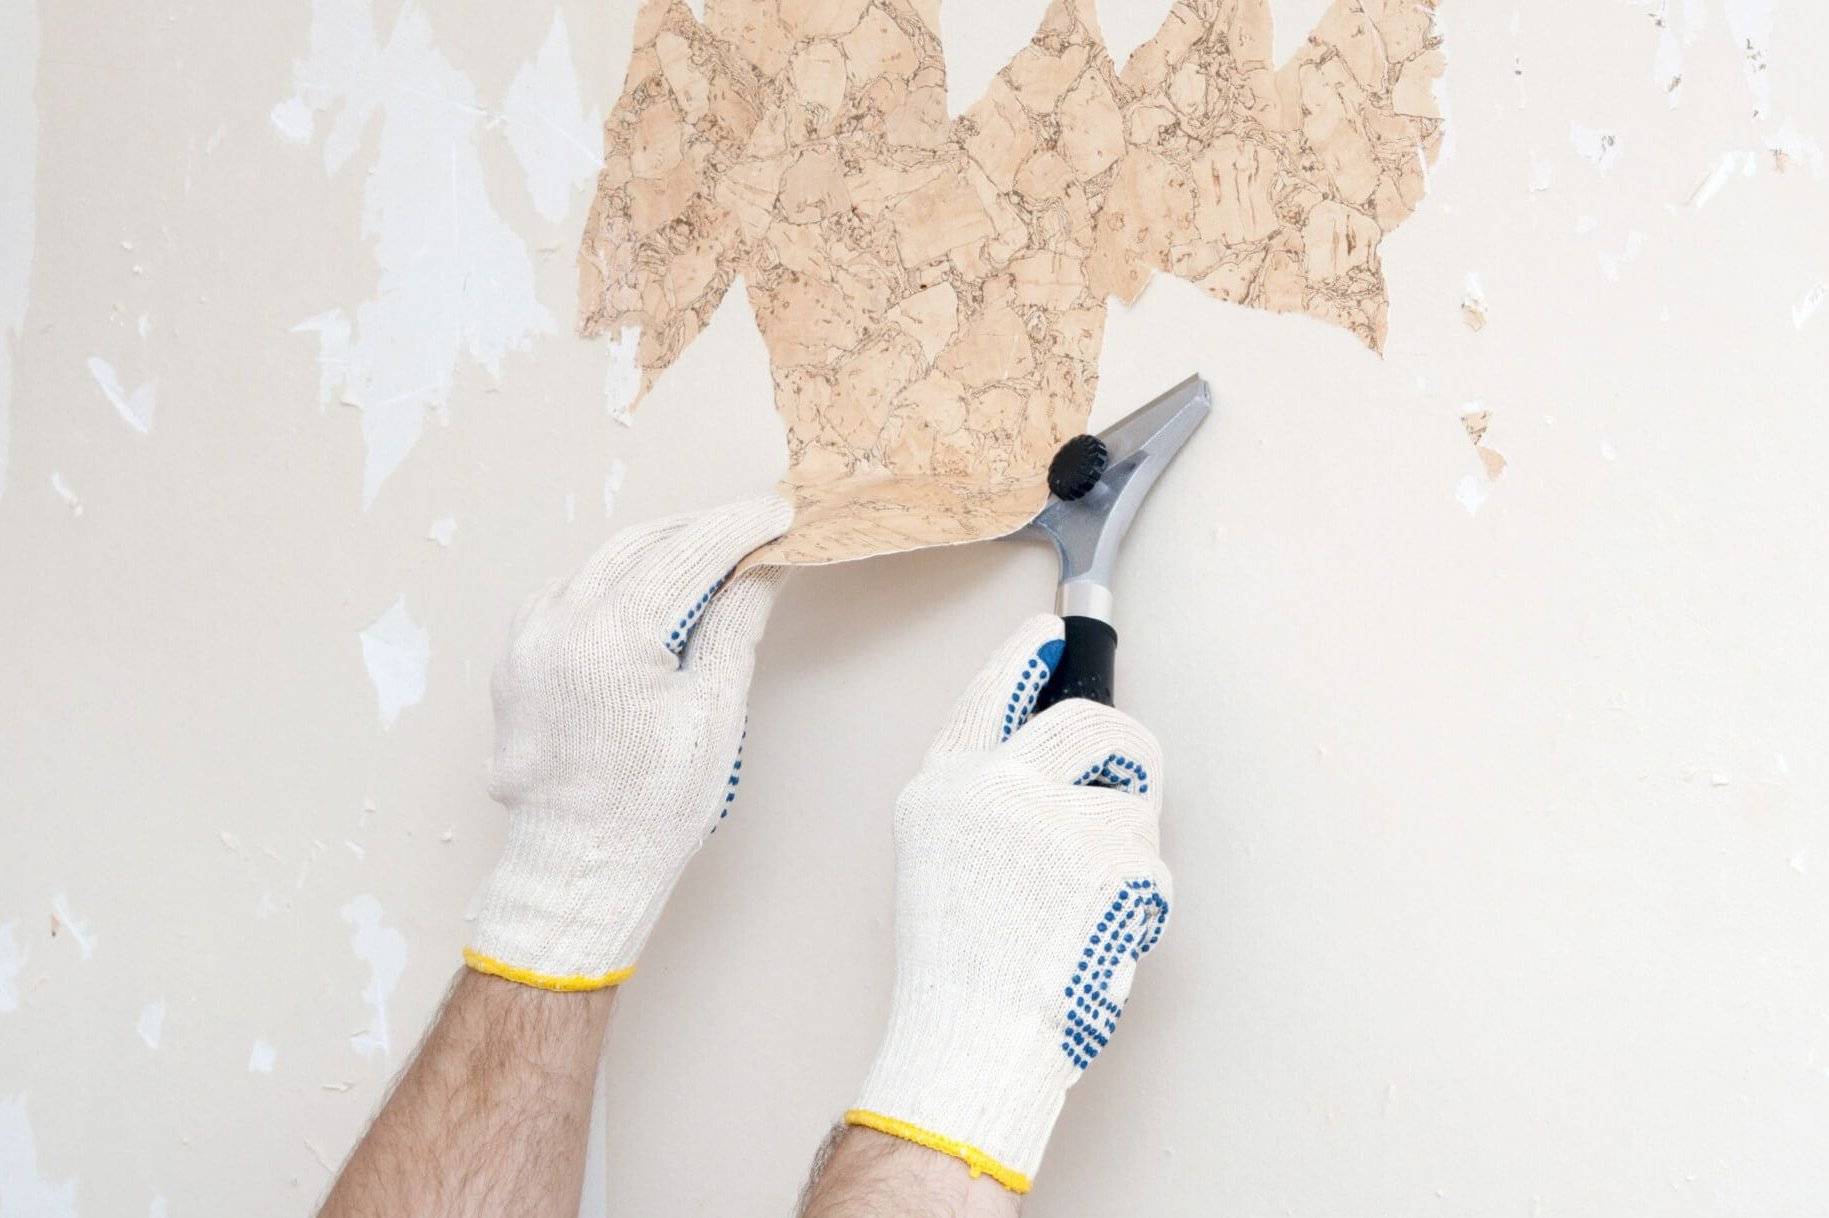 Как покрасить стену в белый цвет: как нанести состав того же оттенка, каким образом провести процедуру, также в случае кирпичной поверхности и выбор материалов